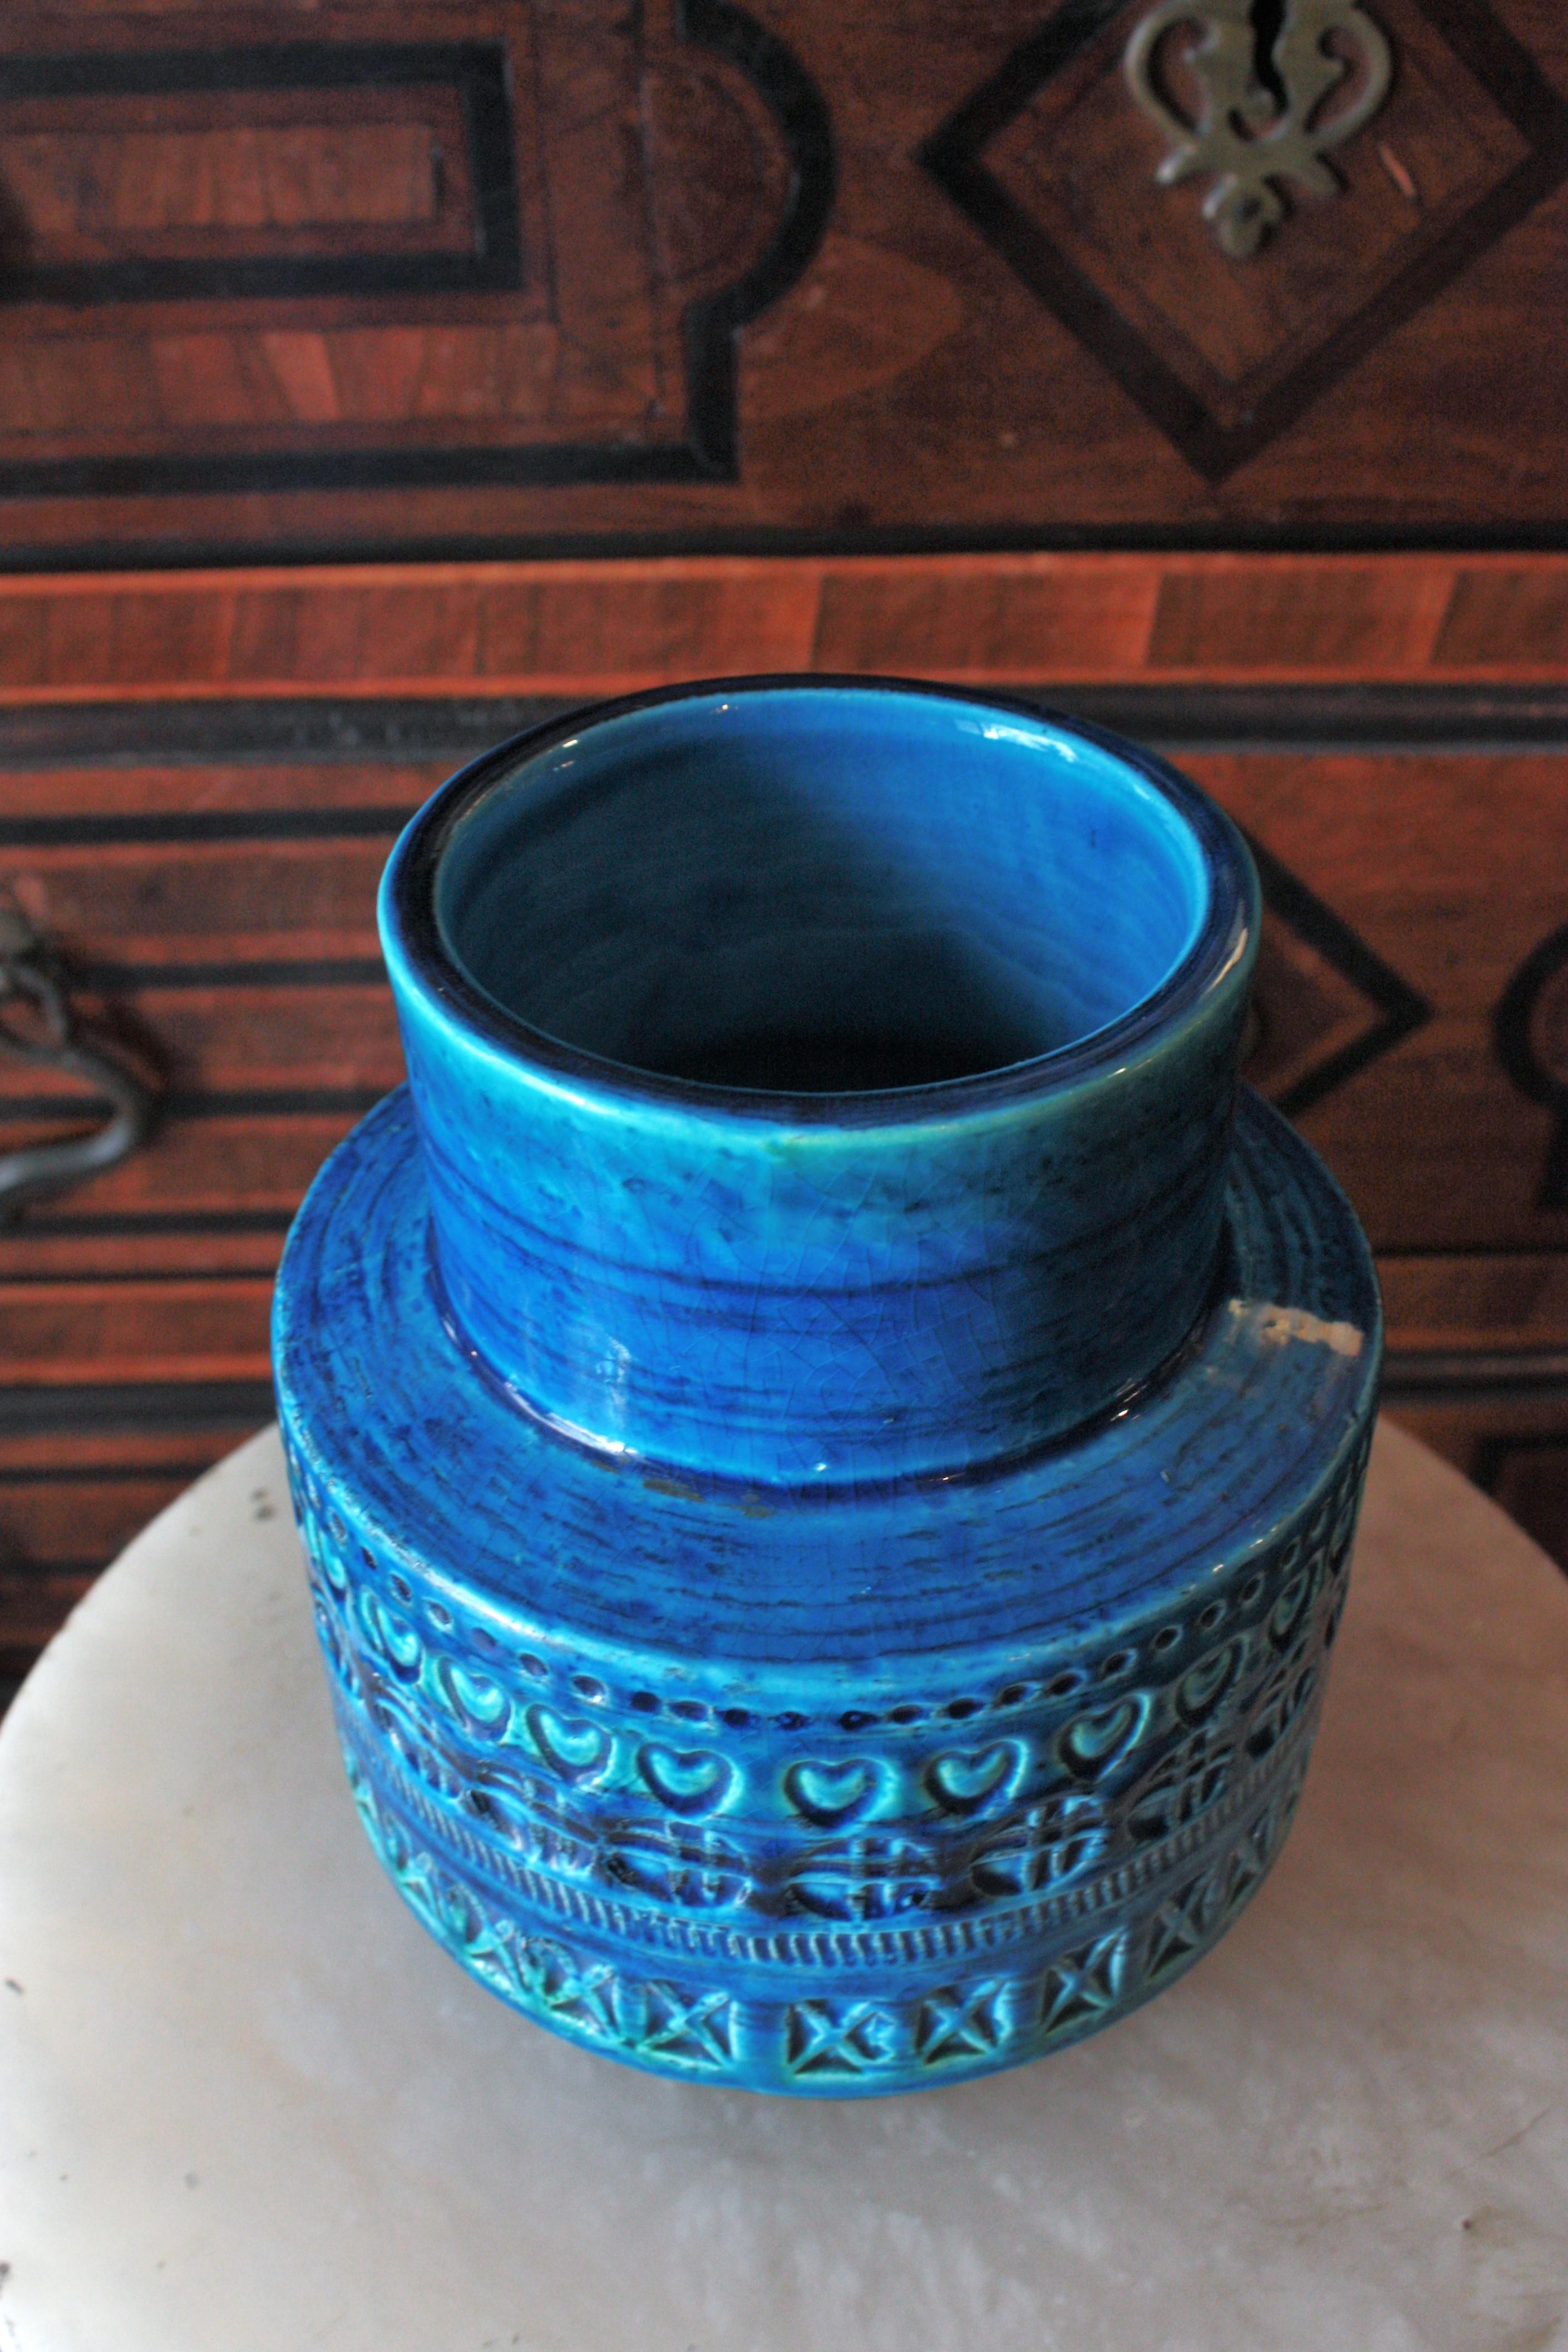 Bitossi Aldo Londi Rimini Blue Ceramic Vase, 1960s For Sale 5